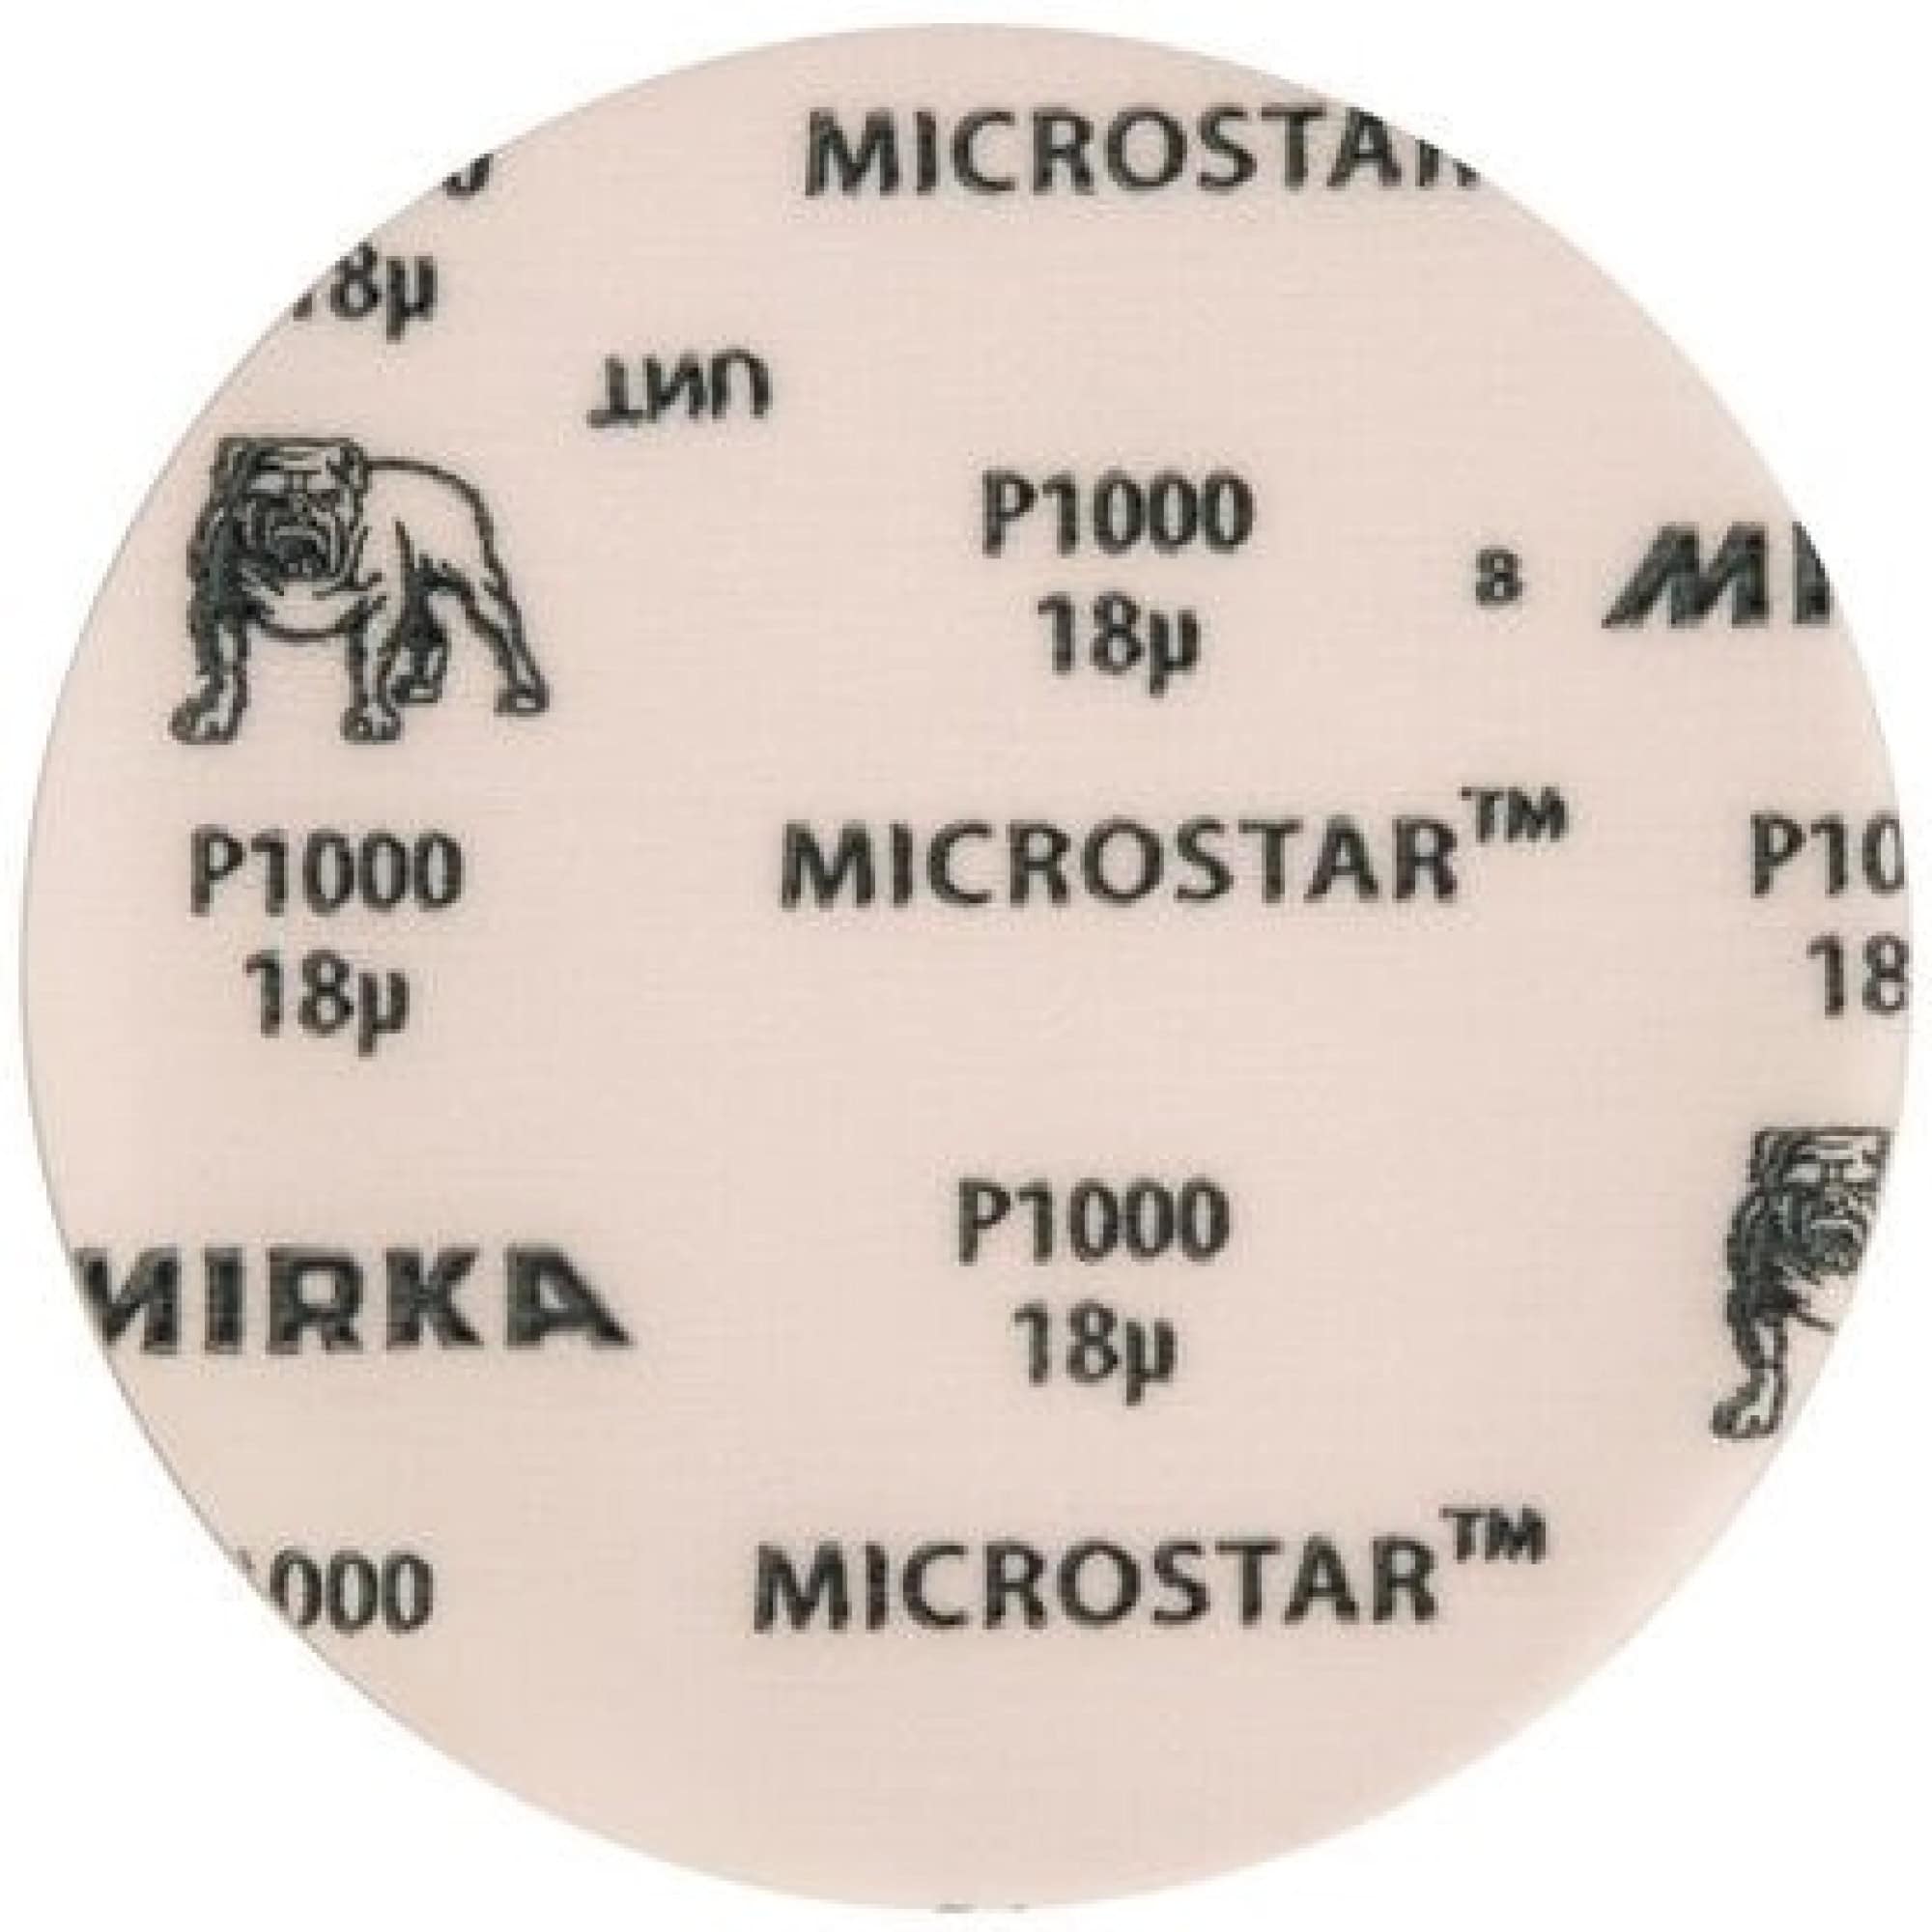 Mirka® Microstar FM62205081, Ø 150 mm, P800, Ungelocht, Kletthaftend, Schleifscheibe mit Aluminiumkorn